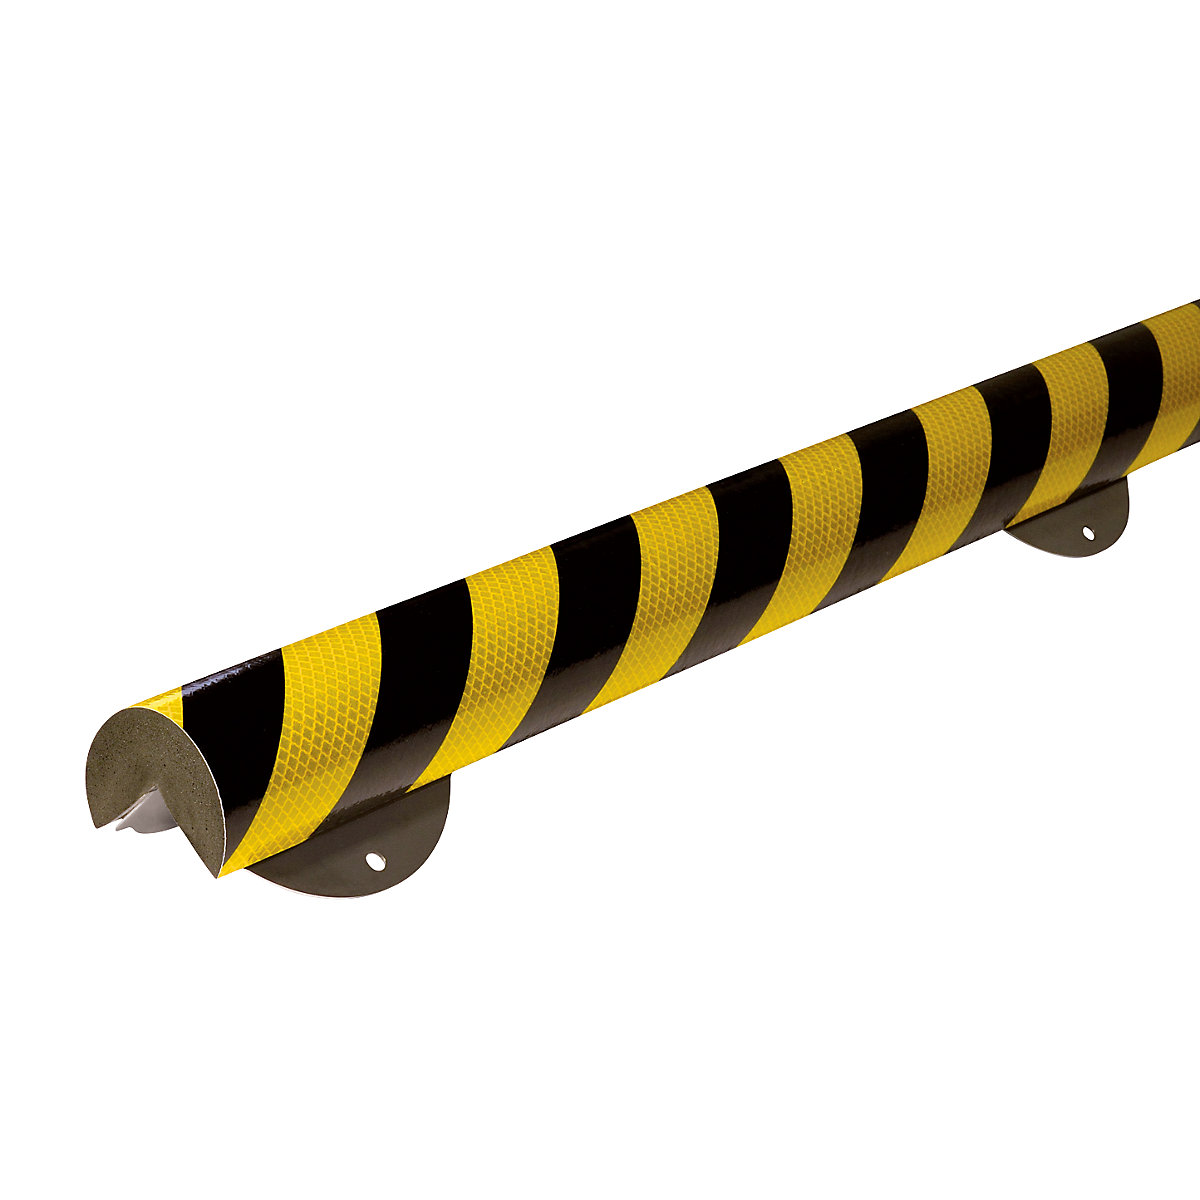 Protecție pentru colț Knuffi® cu șină de montaj – SHG, tip A+, bucată de 1 m, negru / galben, reflectorizant